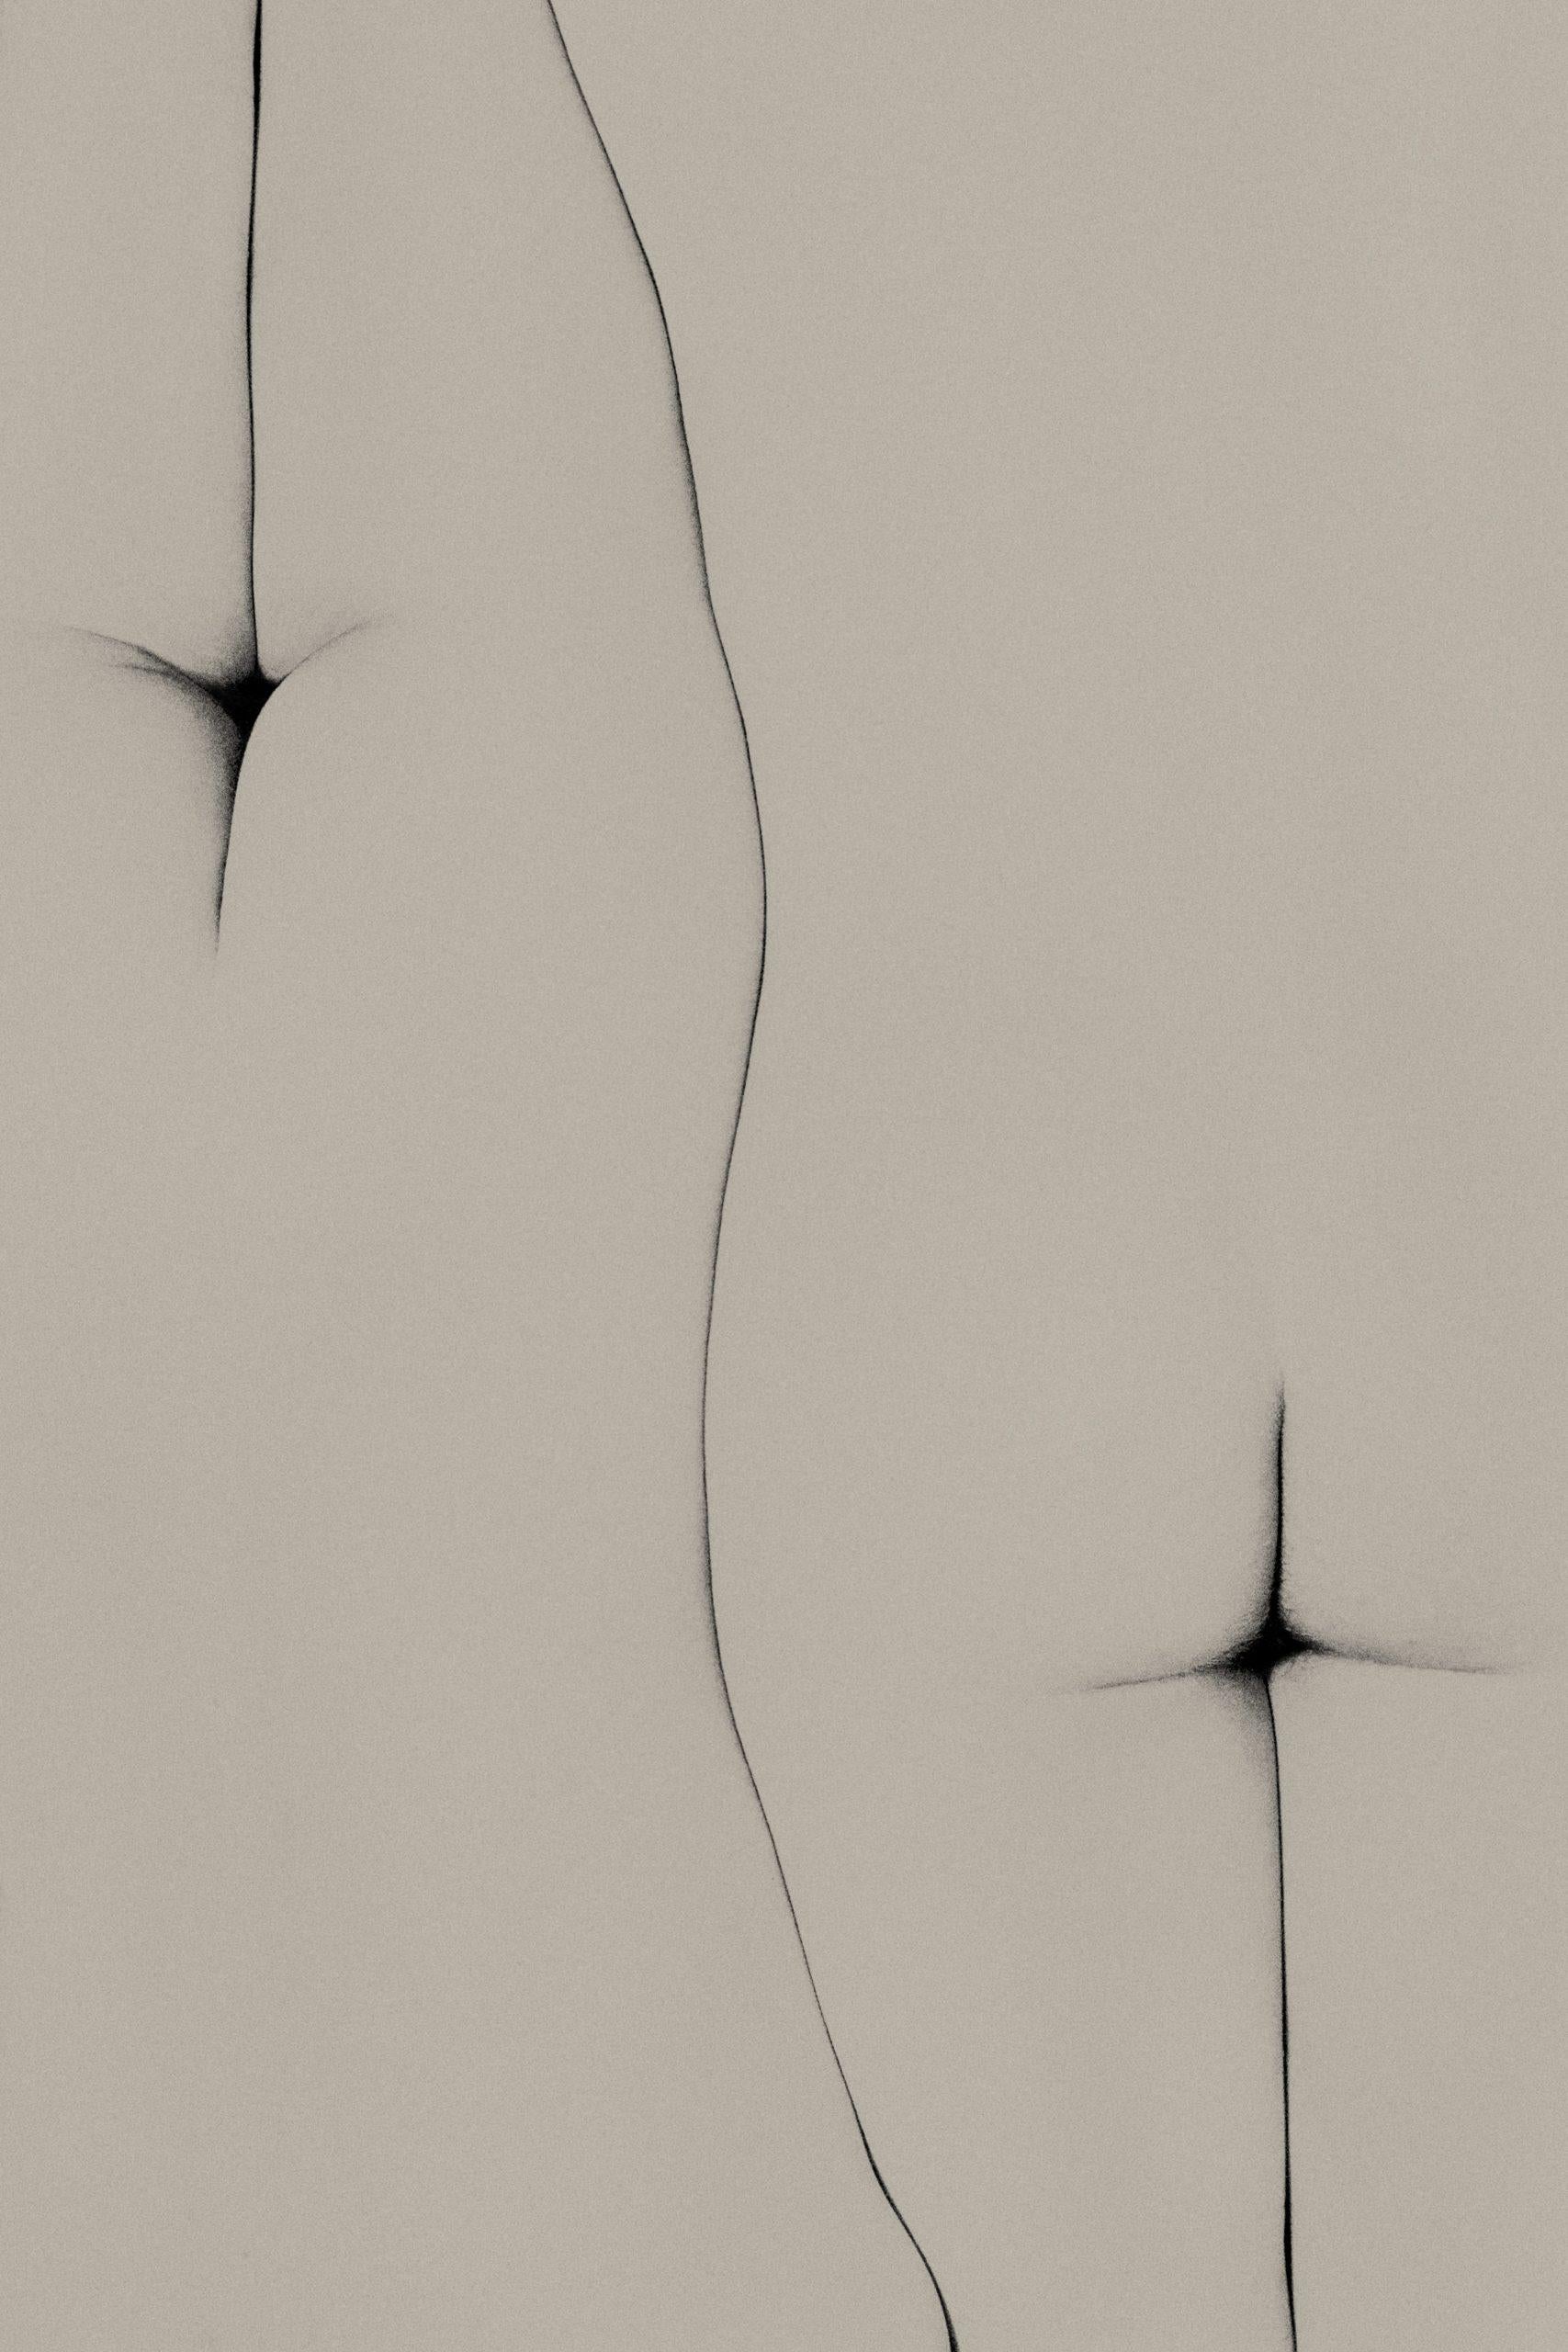 Sara Punt Nude Photograph – Verspiegelt, Fotografie, limitierte Auflage